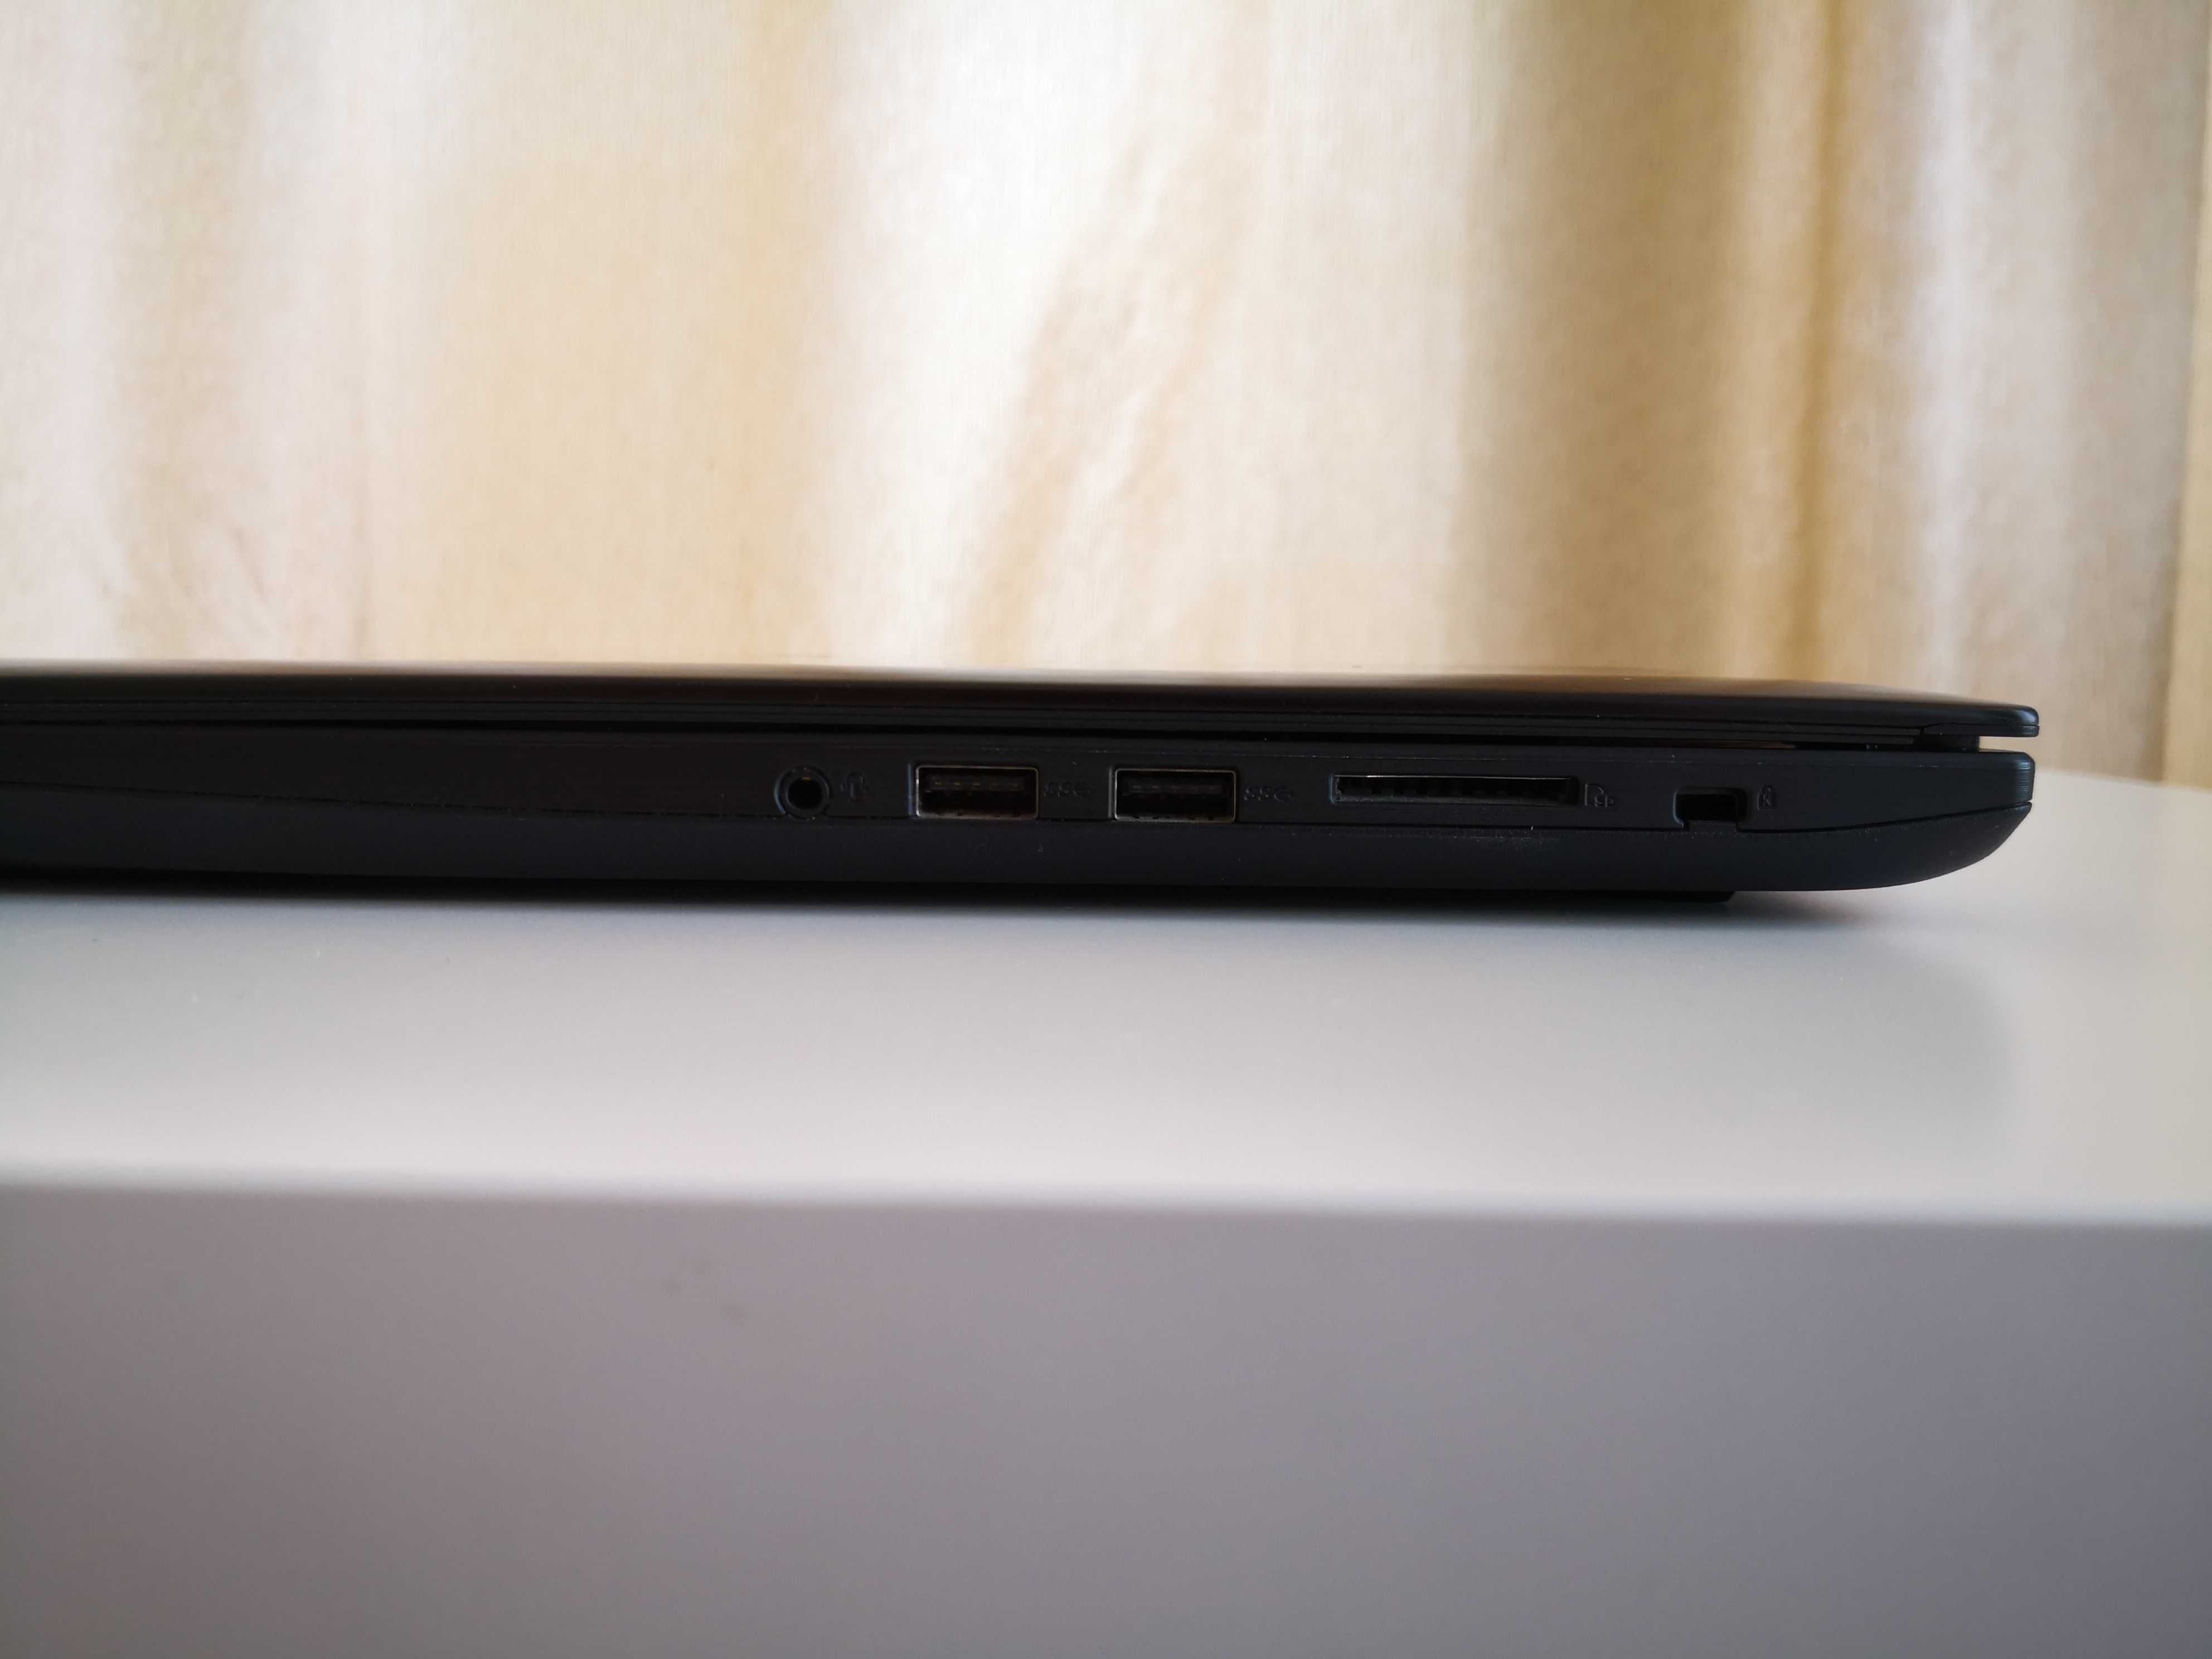 Vand Laptop ASUS FX502VM, 15.6", i7, GTX 1060, HDD 256GB + HDD 1TB